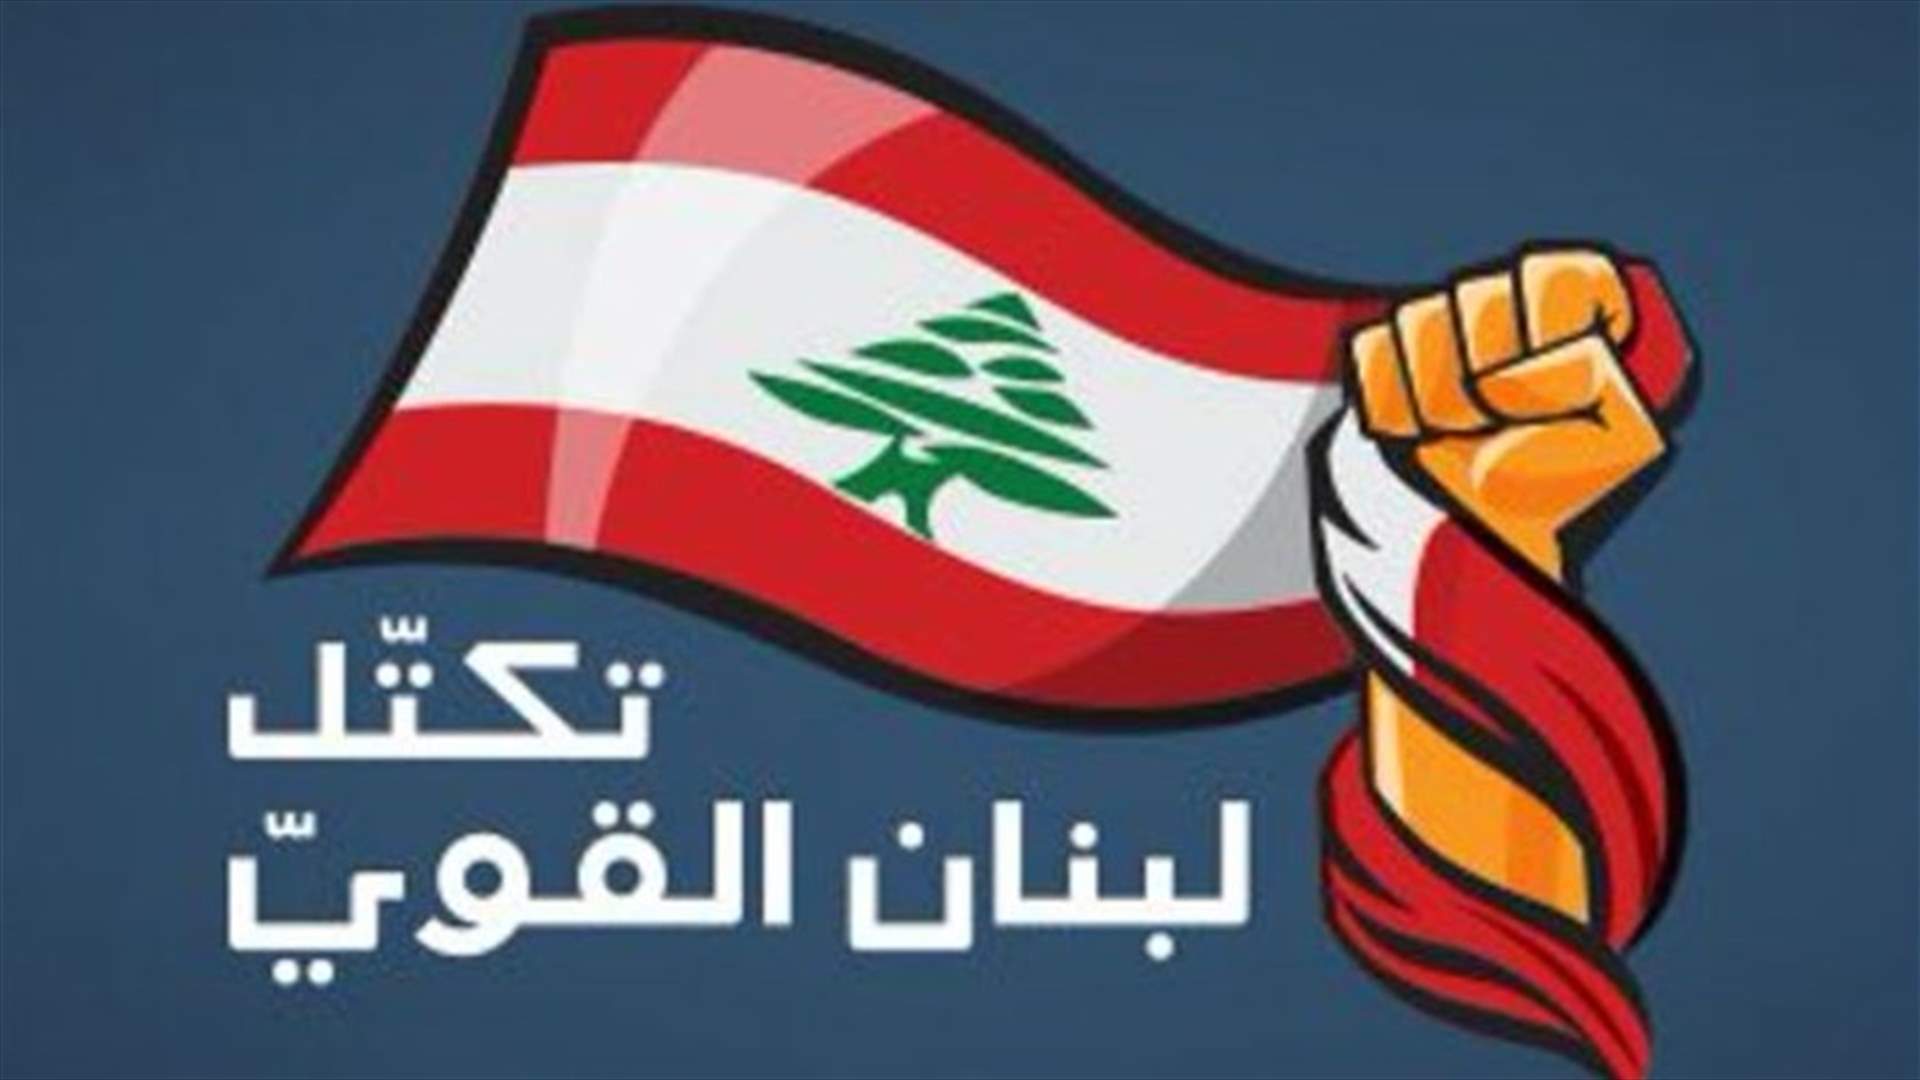 اجتماع استثنائي لتكتل لبنان القوي للبحث في الملف الحكومي... ماذا في تفاصيله؟